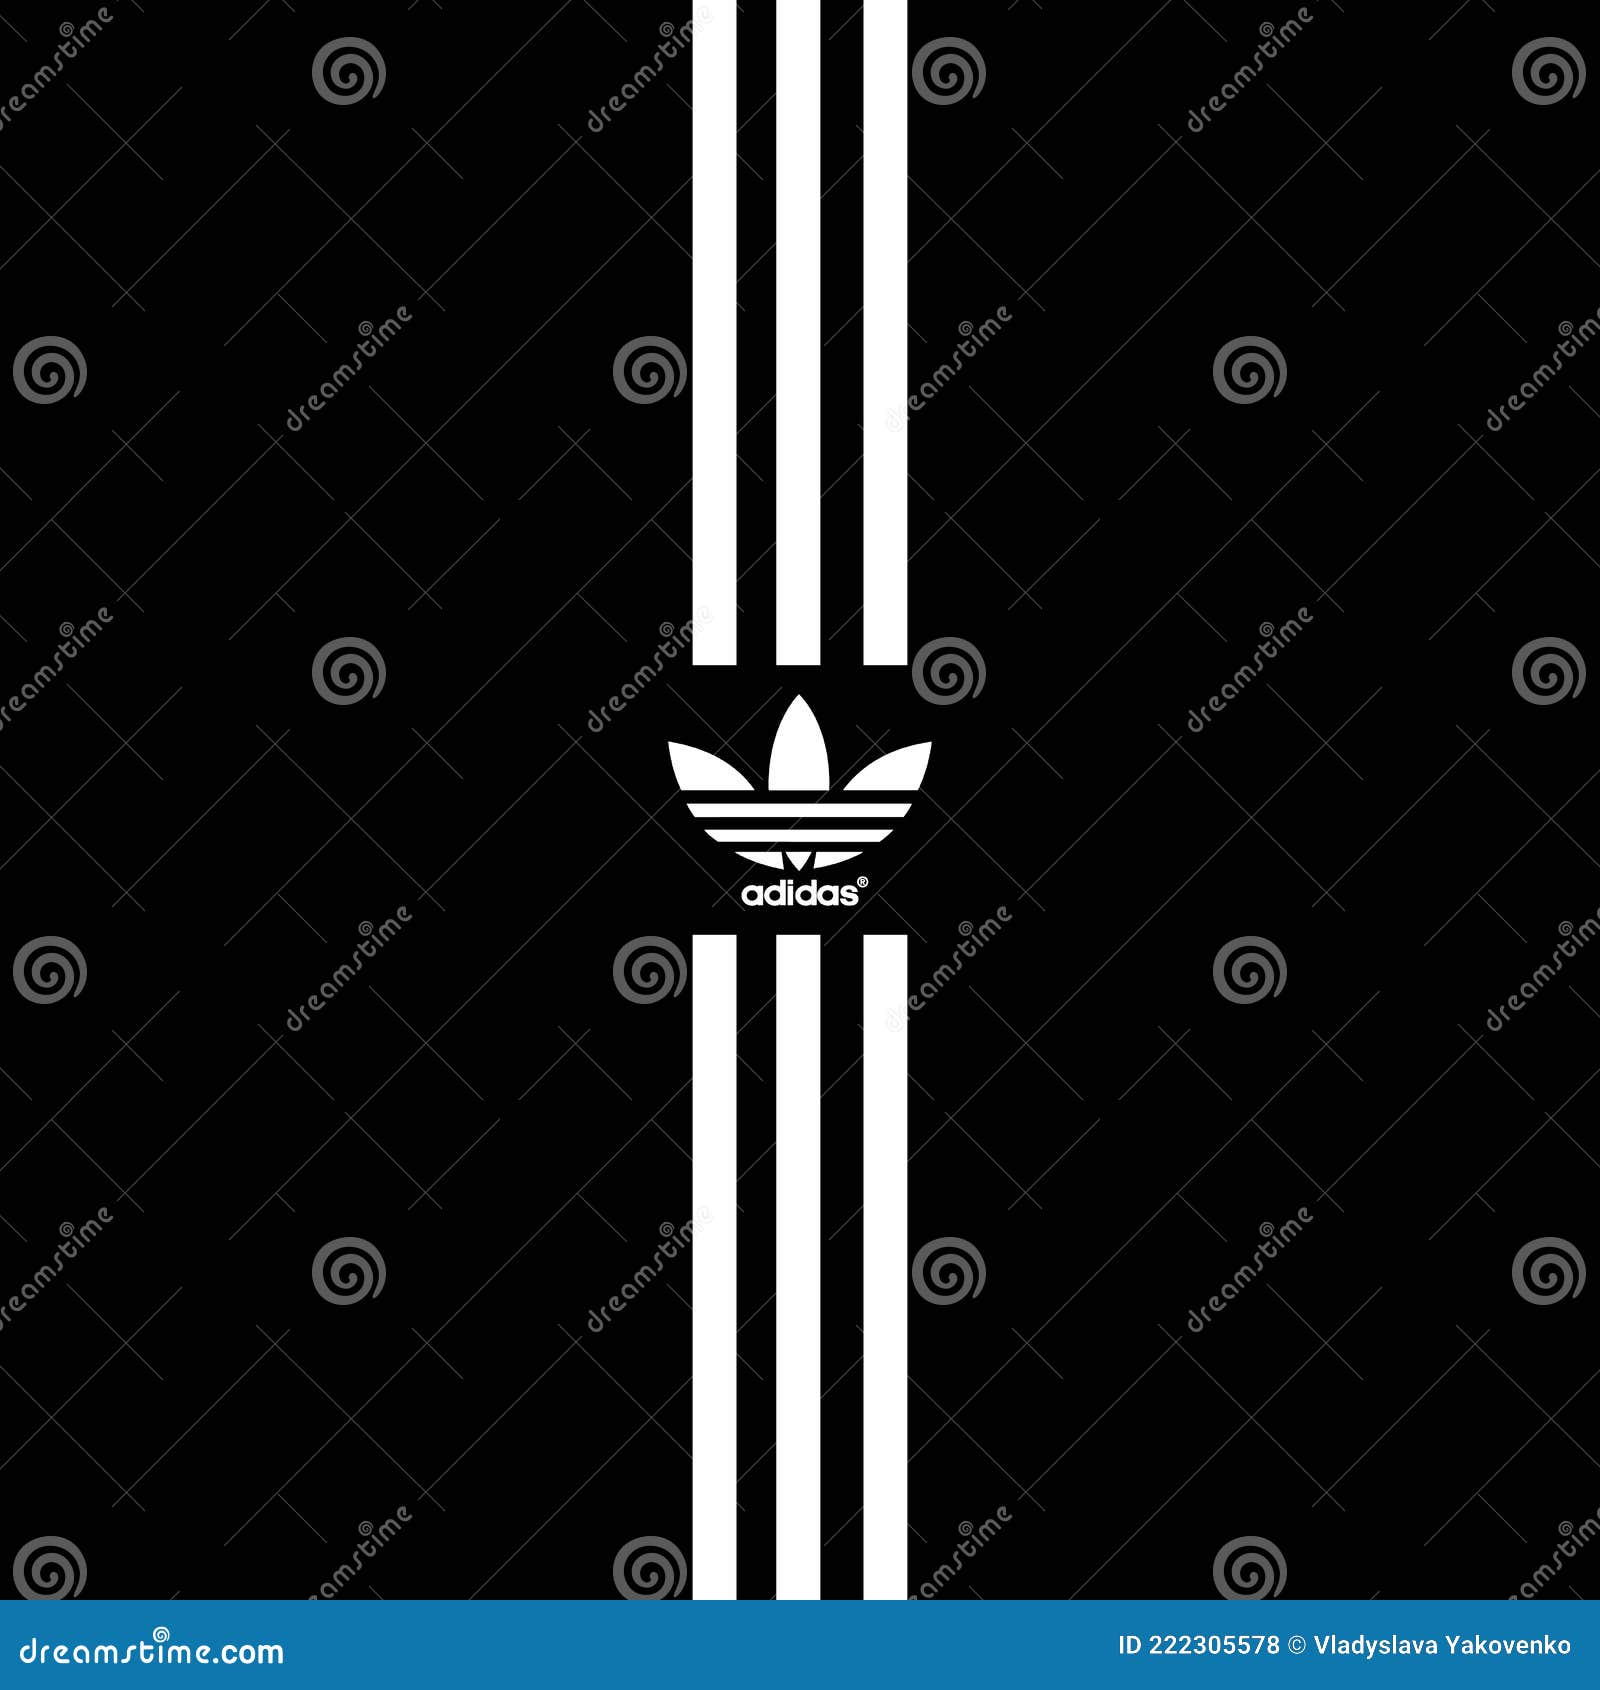 Fondo De Adidas. Adidas Original. De Ropa Deportiva. Logo De La Compañía Material Deportivo Y De Ropa Deportiva. Vector. Foto de archivo - Ilustración de insignia, aislado: 222305578